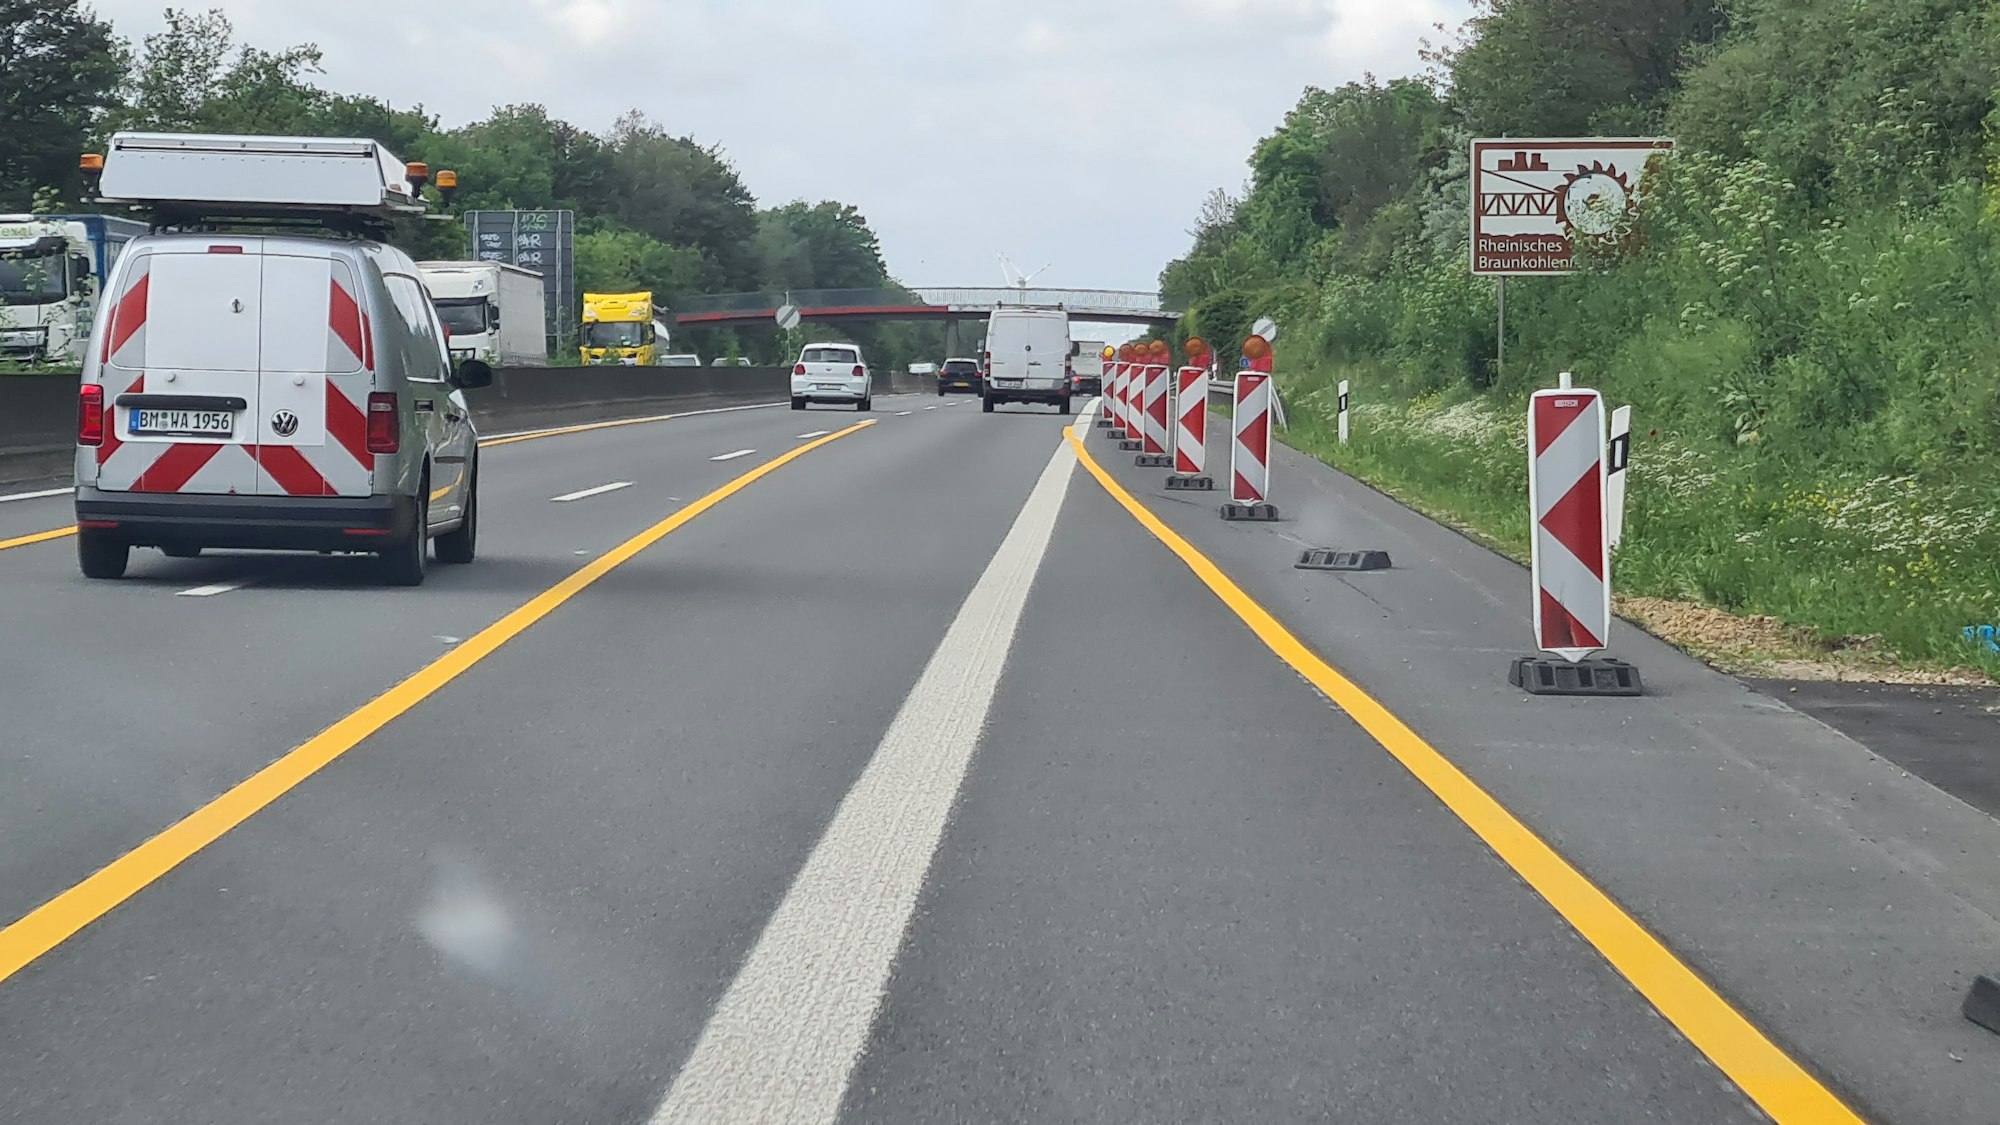 Auf dem Foto ist die A61 zu sehen. Die Autobahn bei Bergheim, Kerpen und Erftstadt wird in den nächsten Monaten wieder zur Baustelle. Gelbe Fahrbahnmarkierungen sind aufgetragen worden, am Rand stehen rot-weiße Warnbaken.